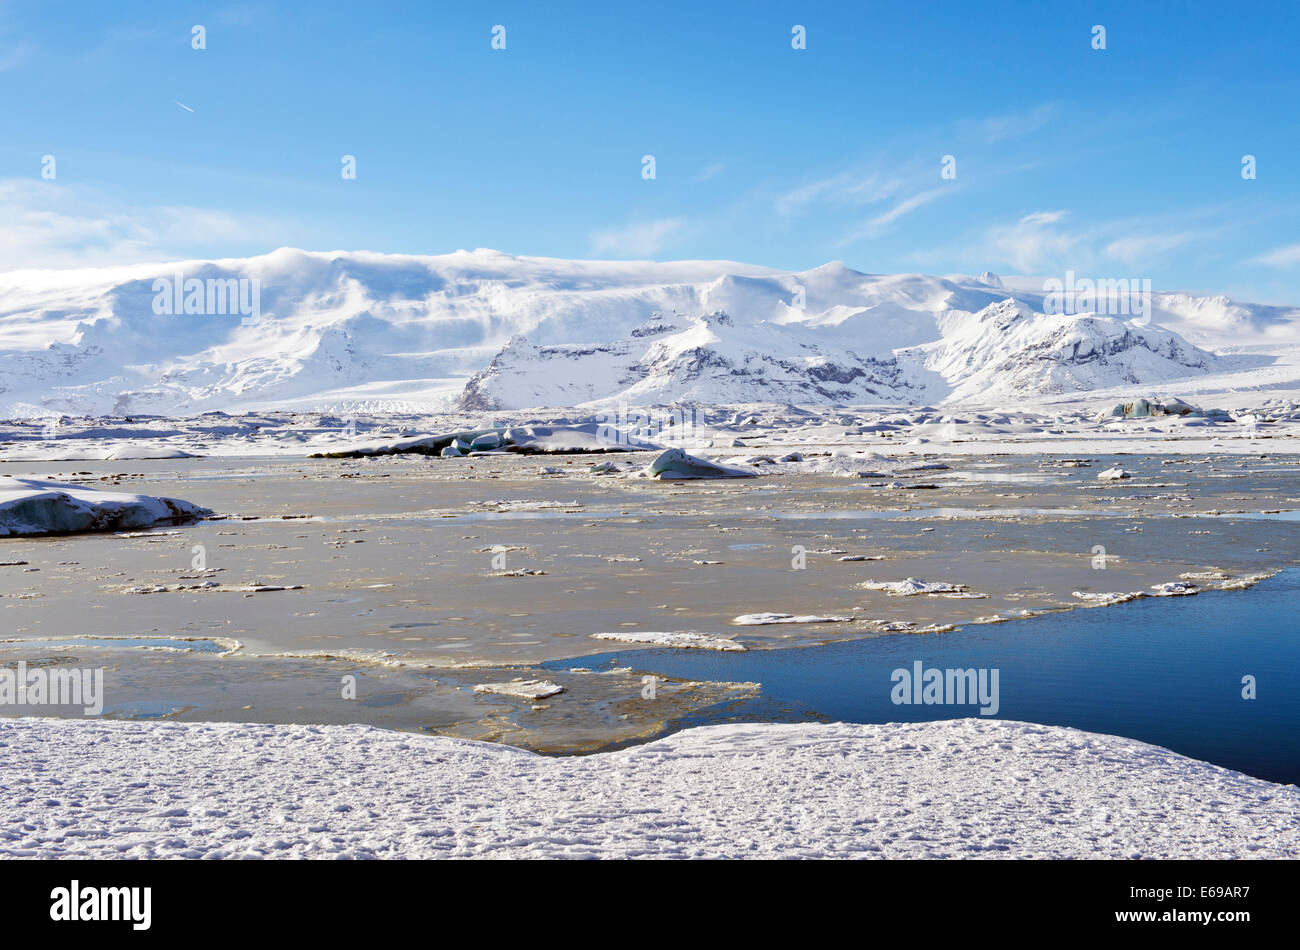 Les montagnes enneigées dans le paysage de l'Arctique Banque D'Images